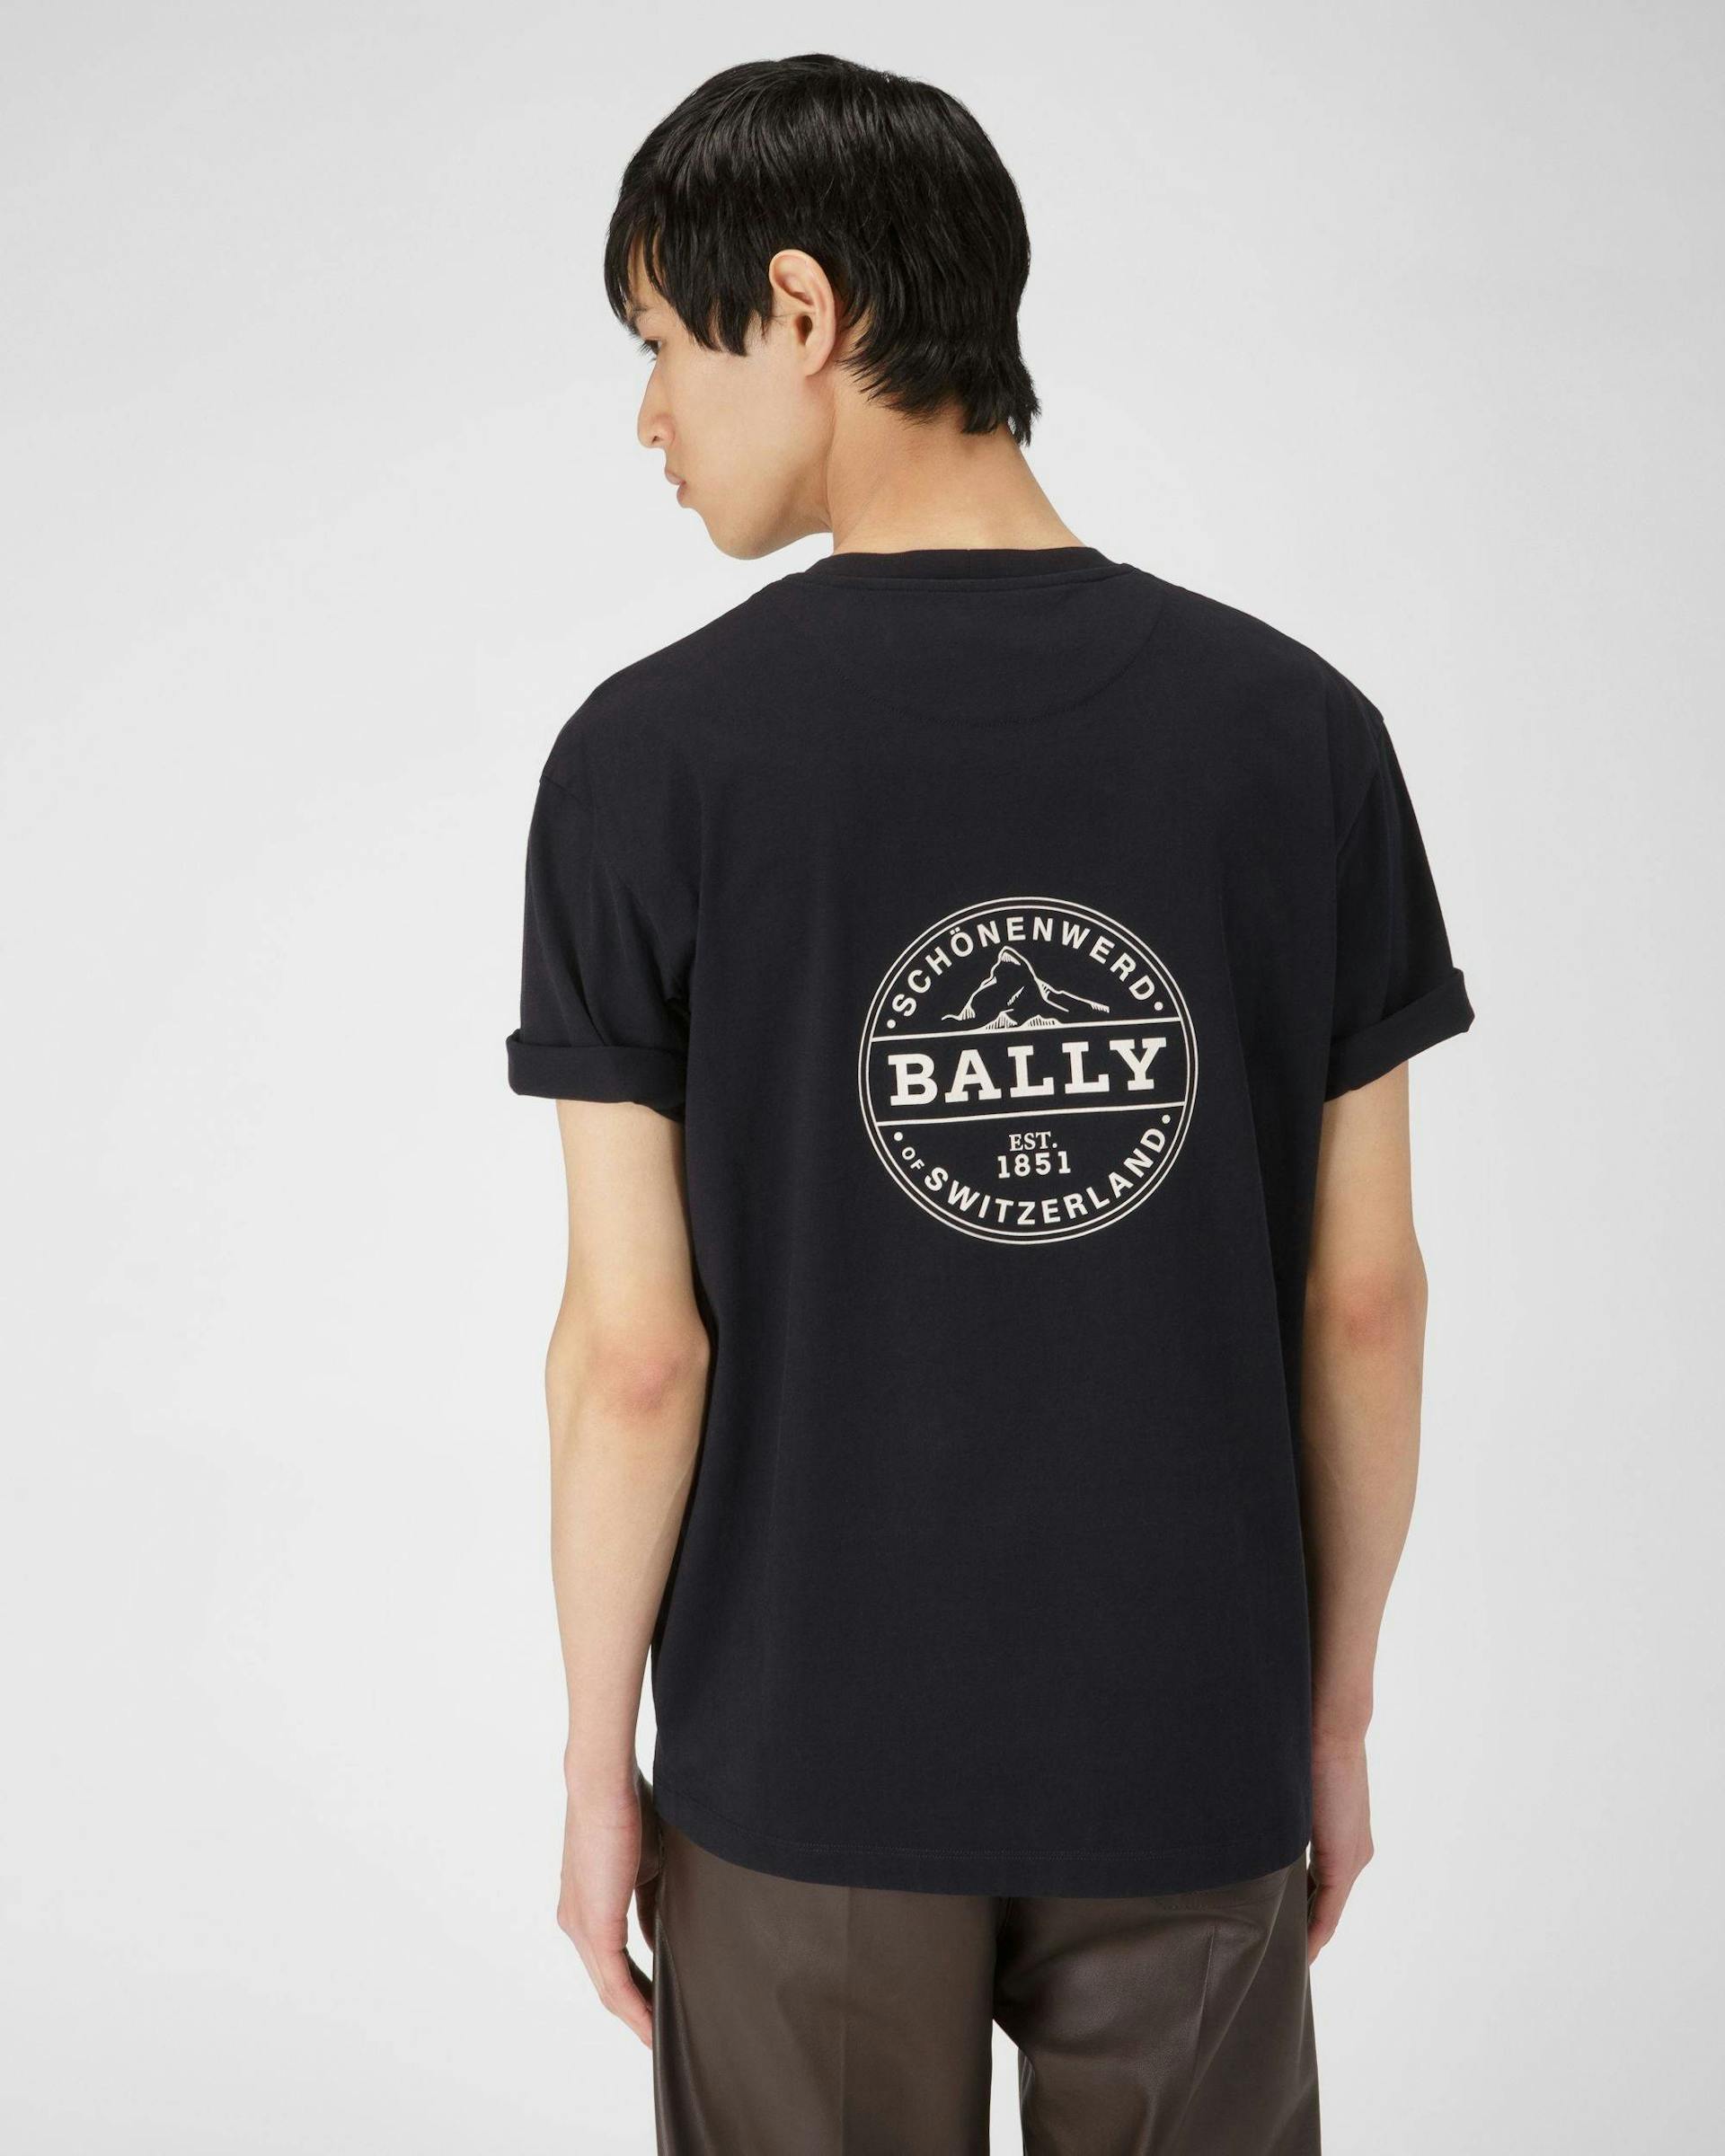 T-Shirt Con Logo Heritage In Cotone Biologico Blu Navy - Uomo - Bally - 03